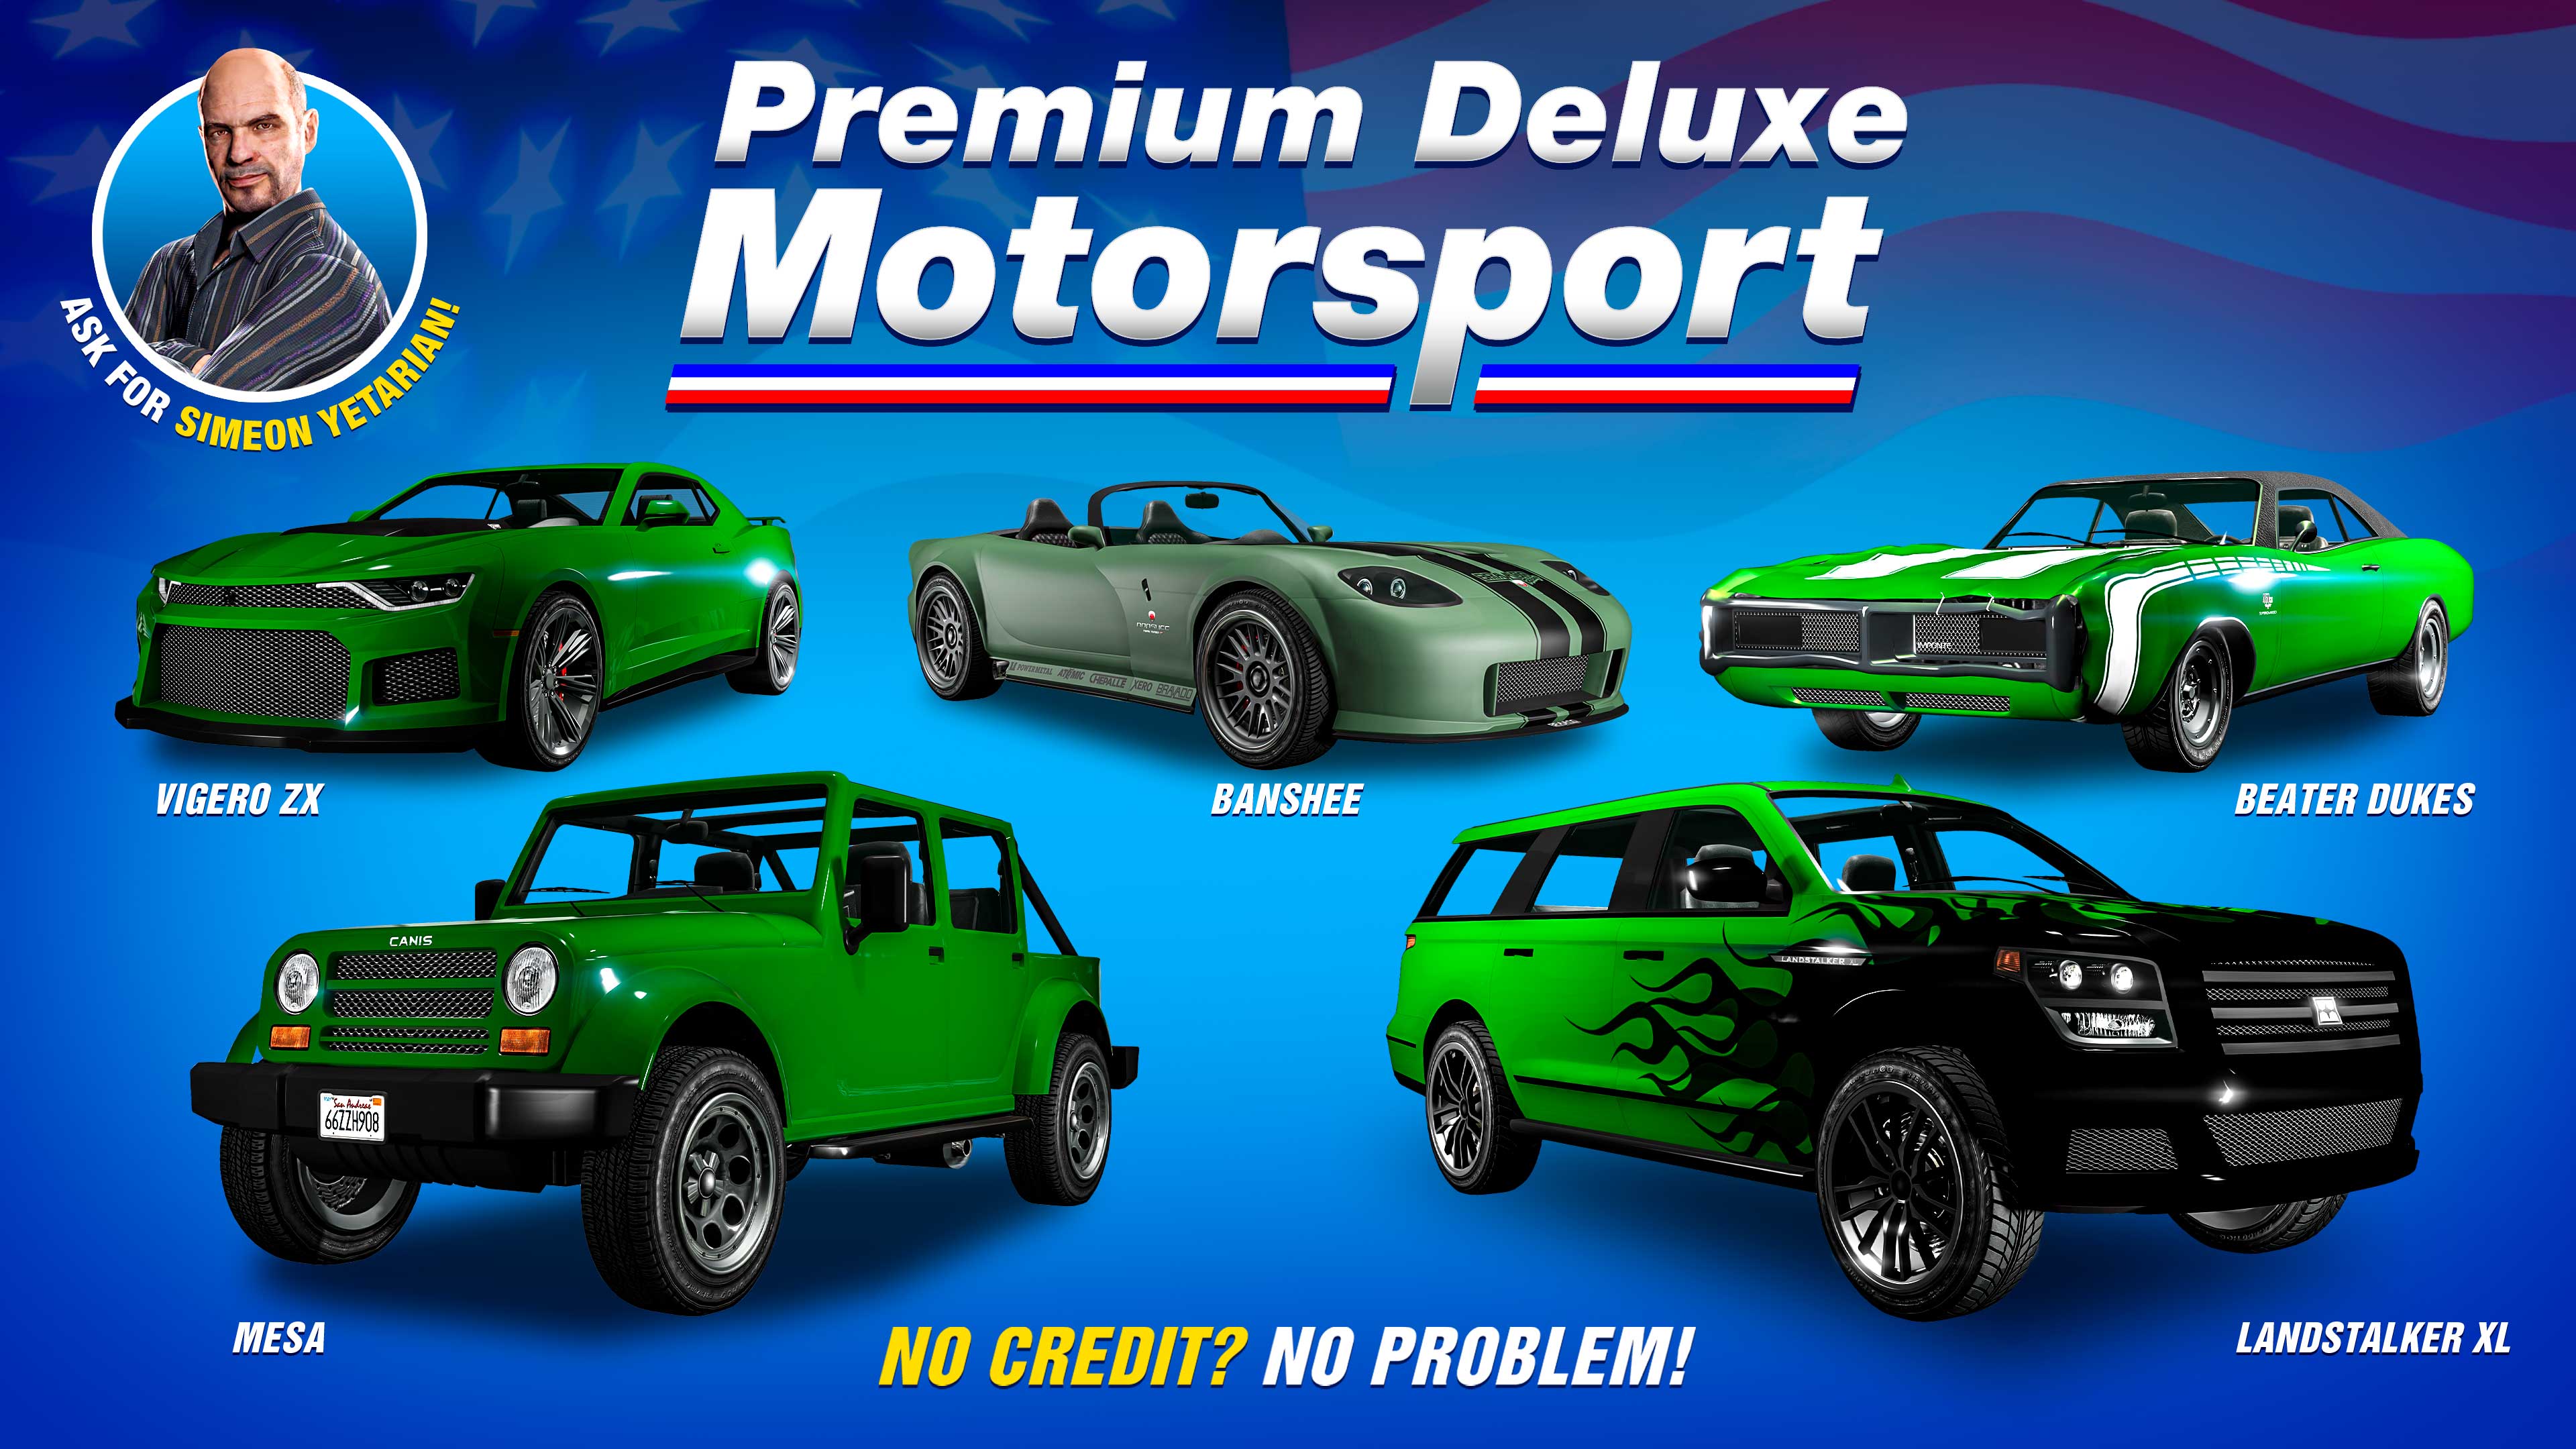 poster raffigurante i veicoli dell’autosalone Premium Deluxe Motorsport